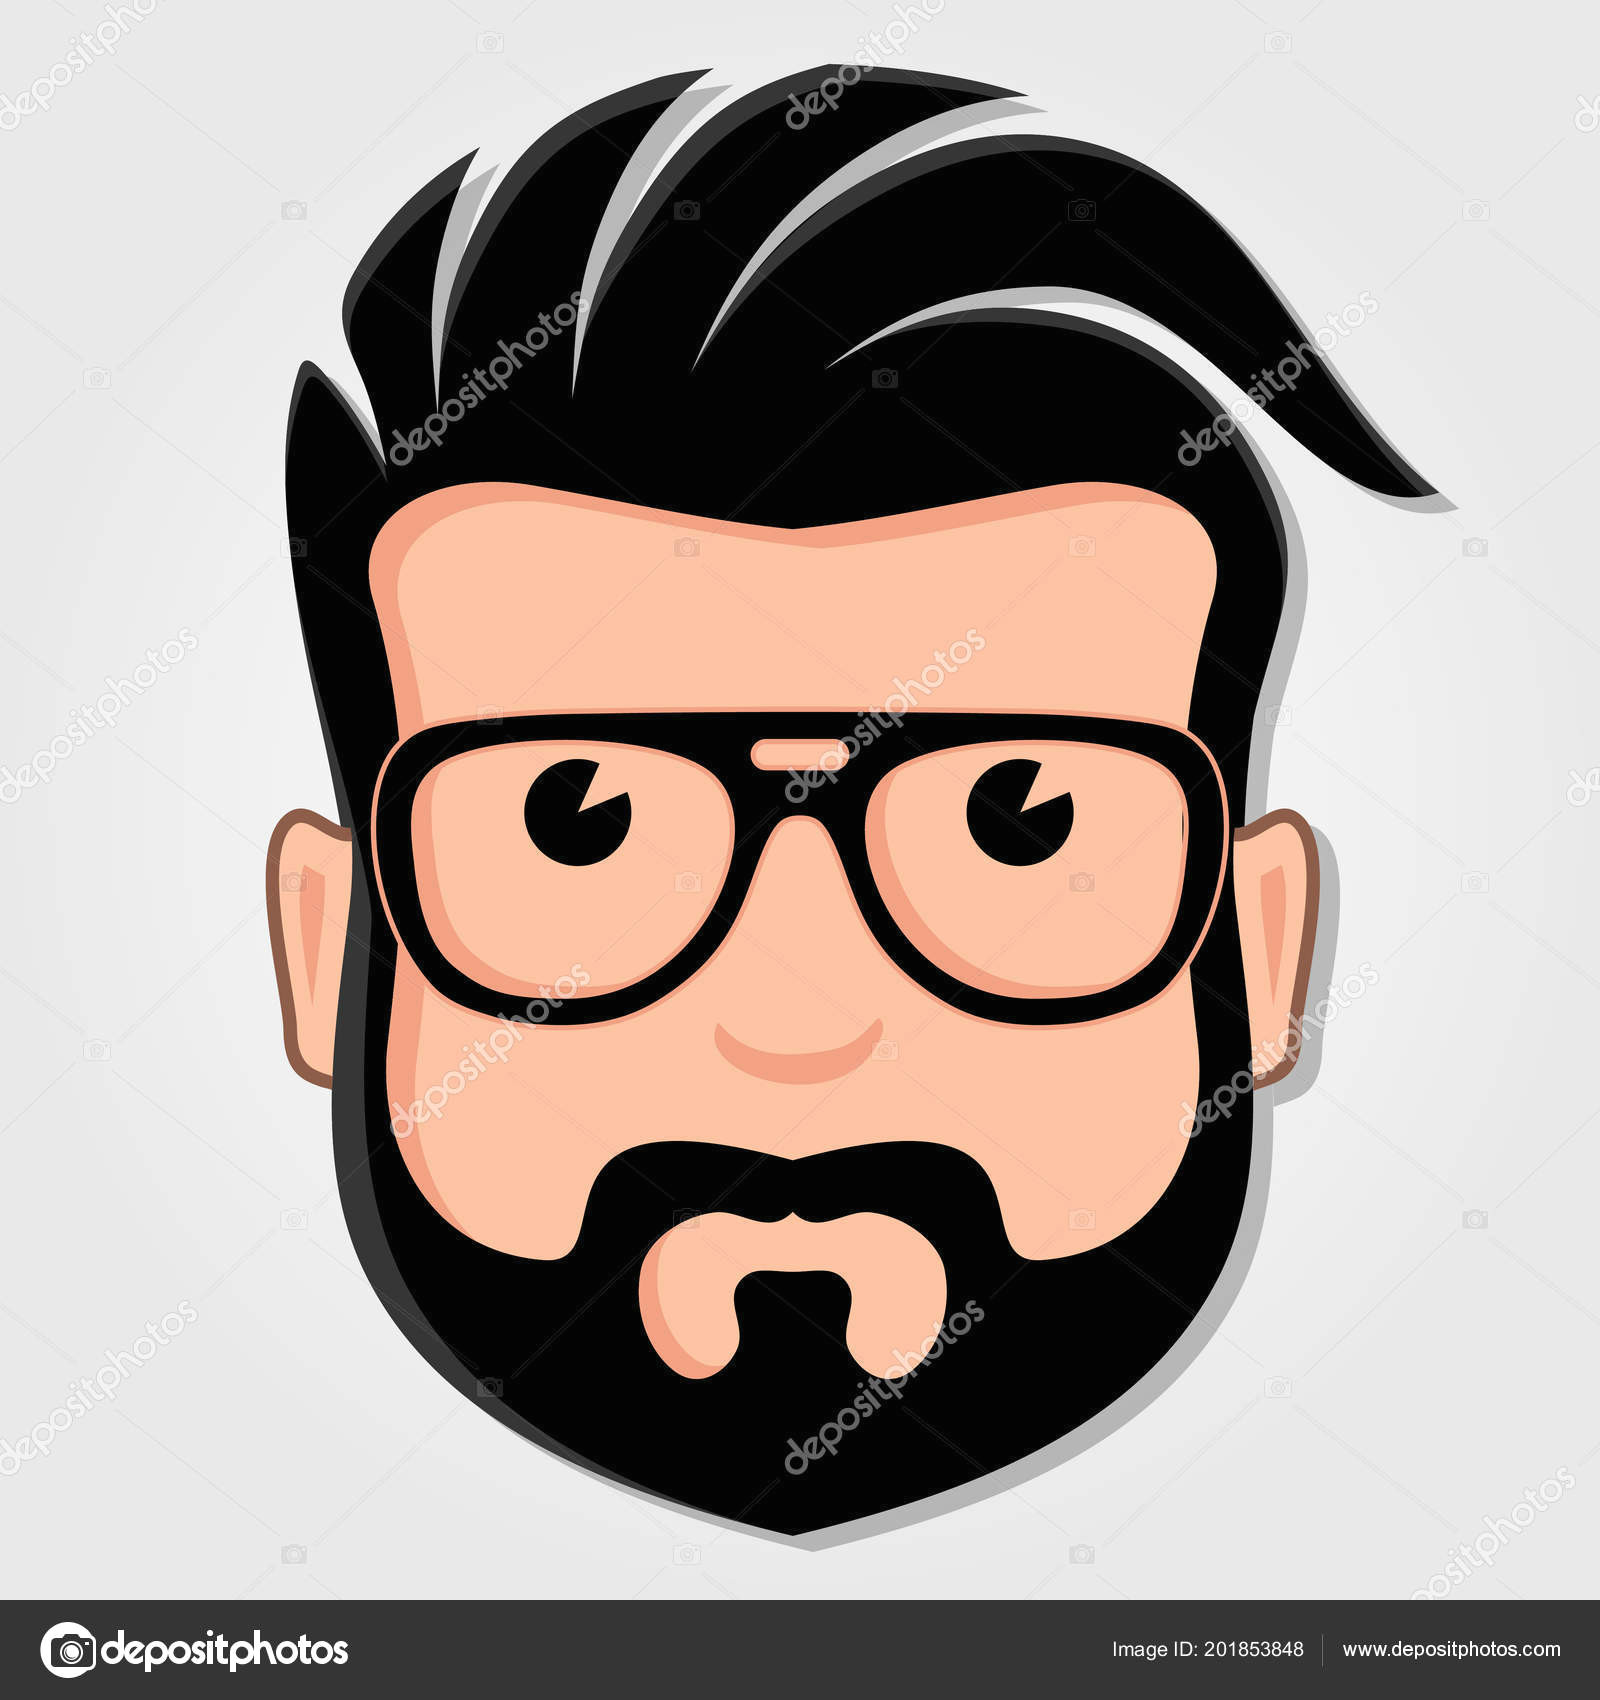 man cartoon face with glasses vector illustration wektor od zfmbek